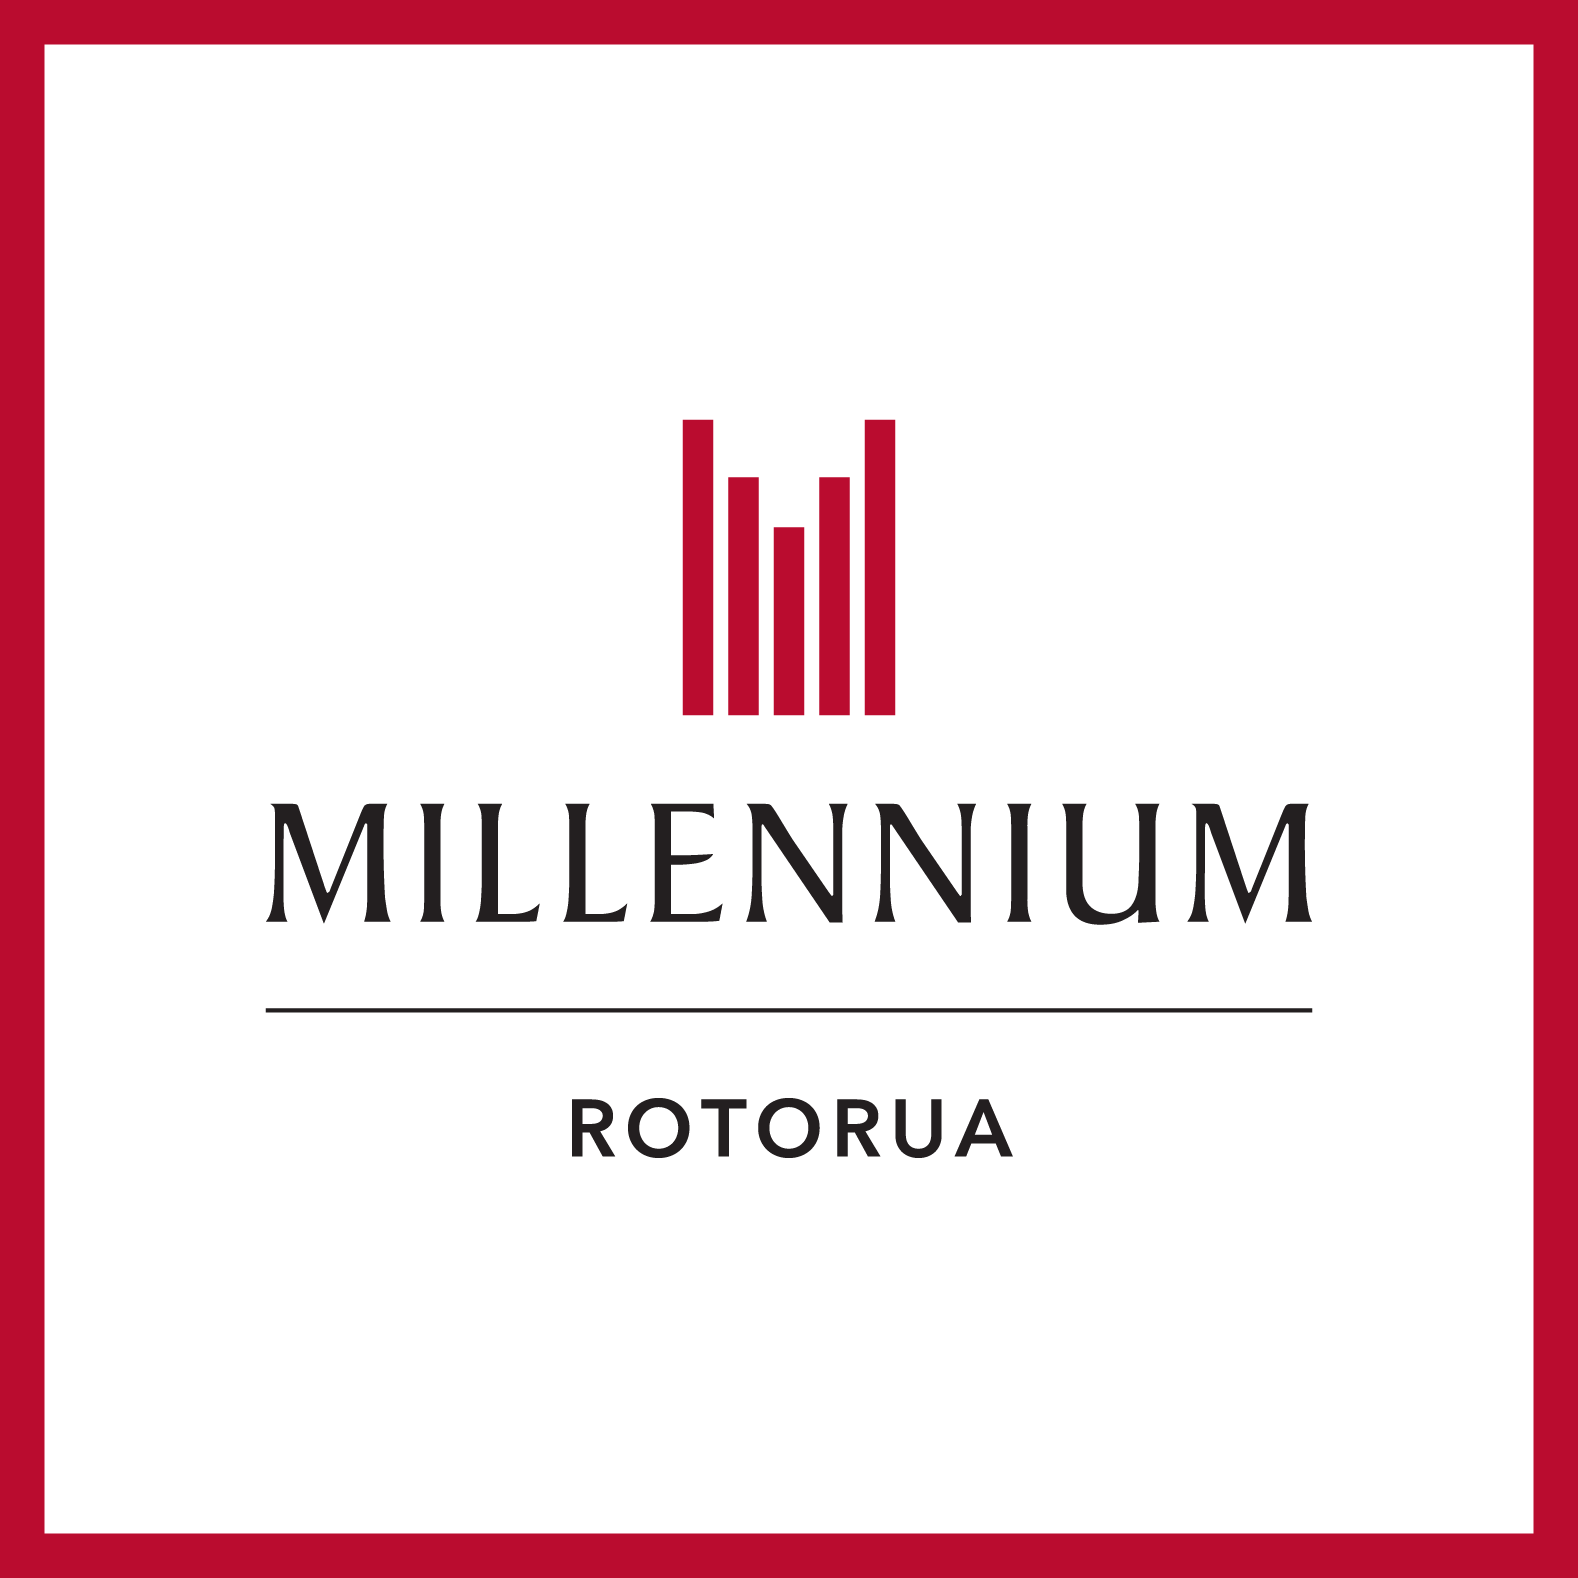 
Millennium Hotel Rotorua